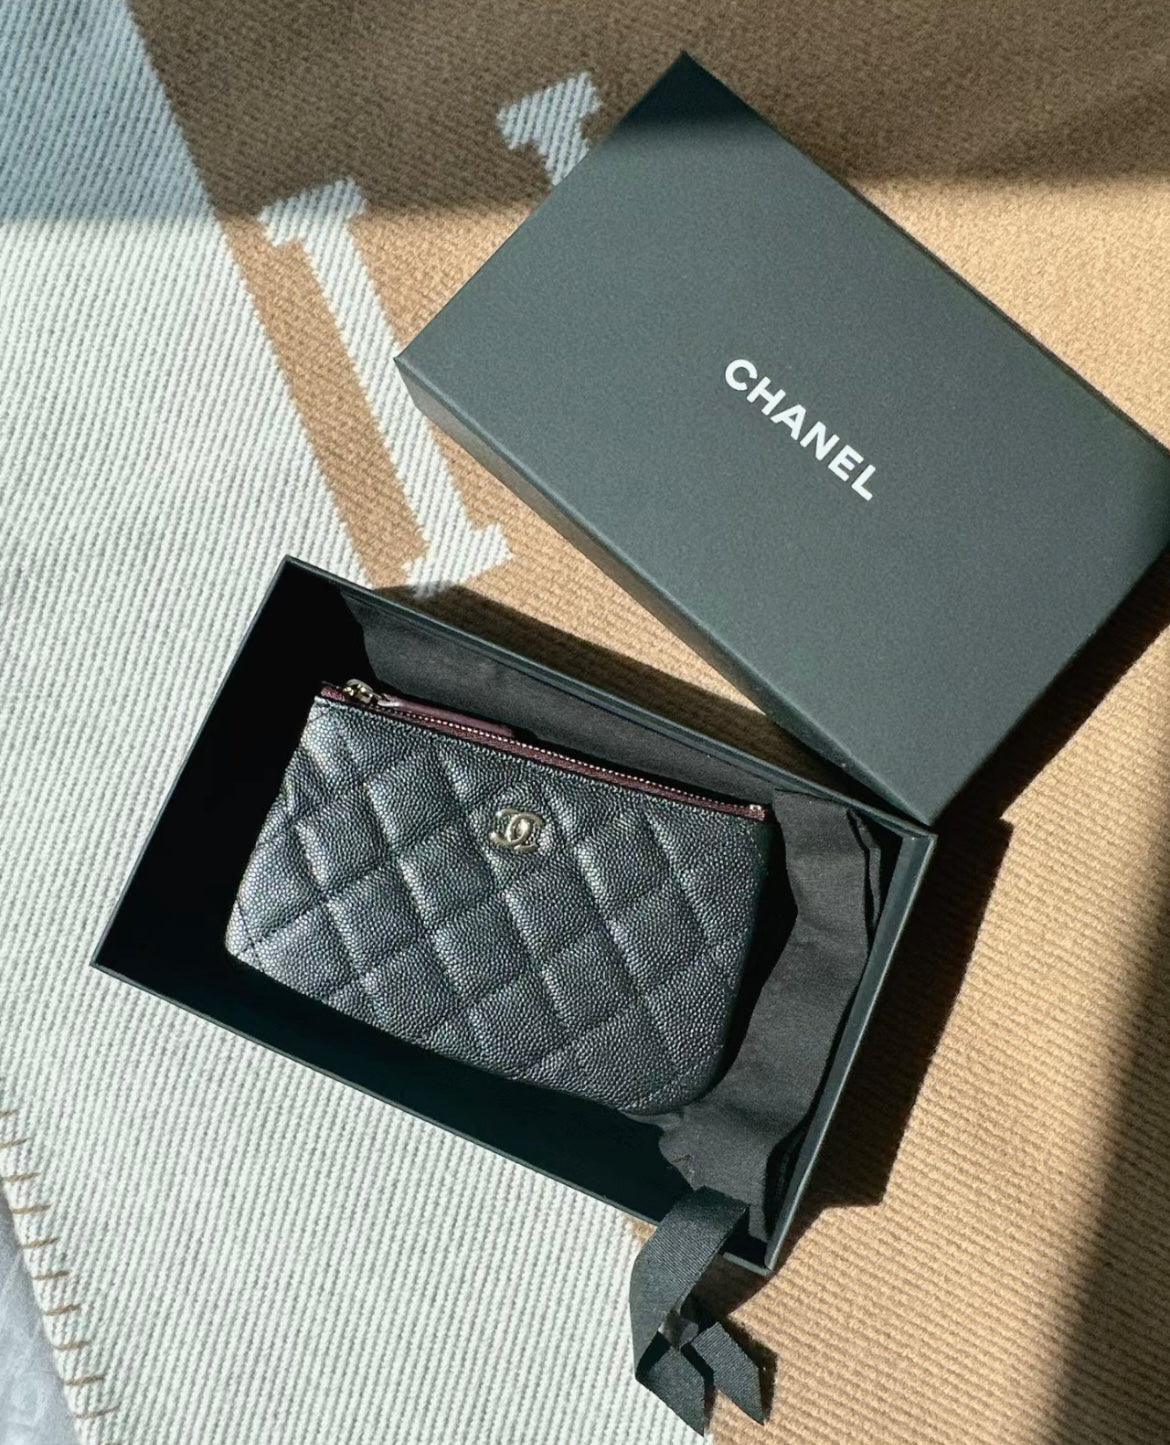 Chanel Classic Mini Pouch in Caviar / Gold Hardware